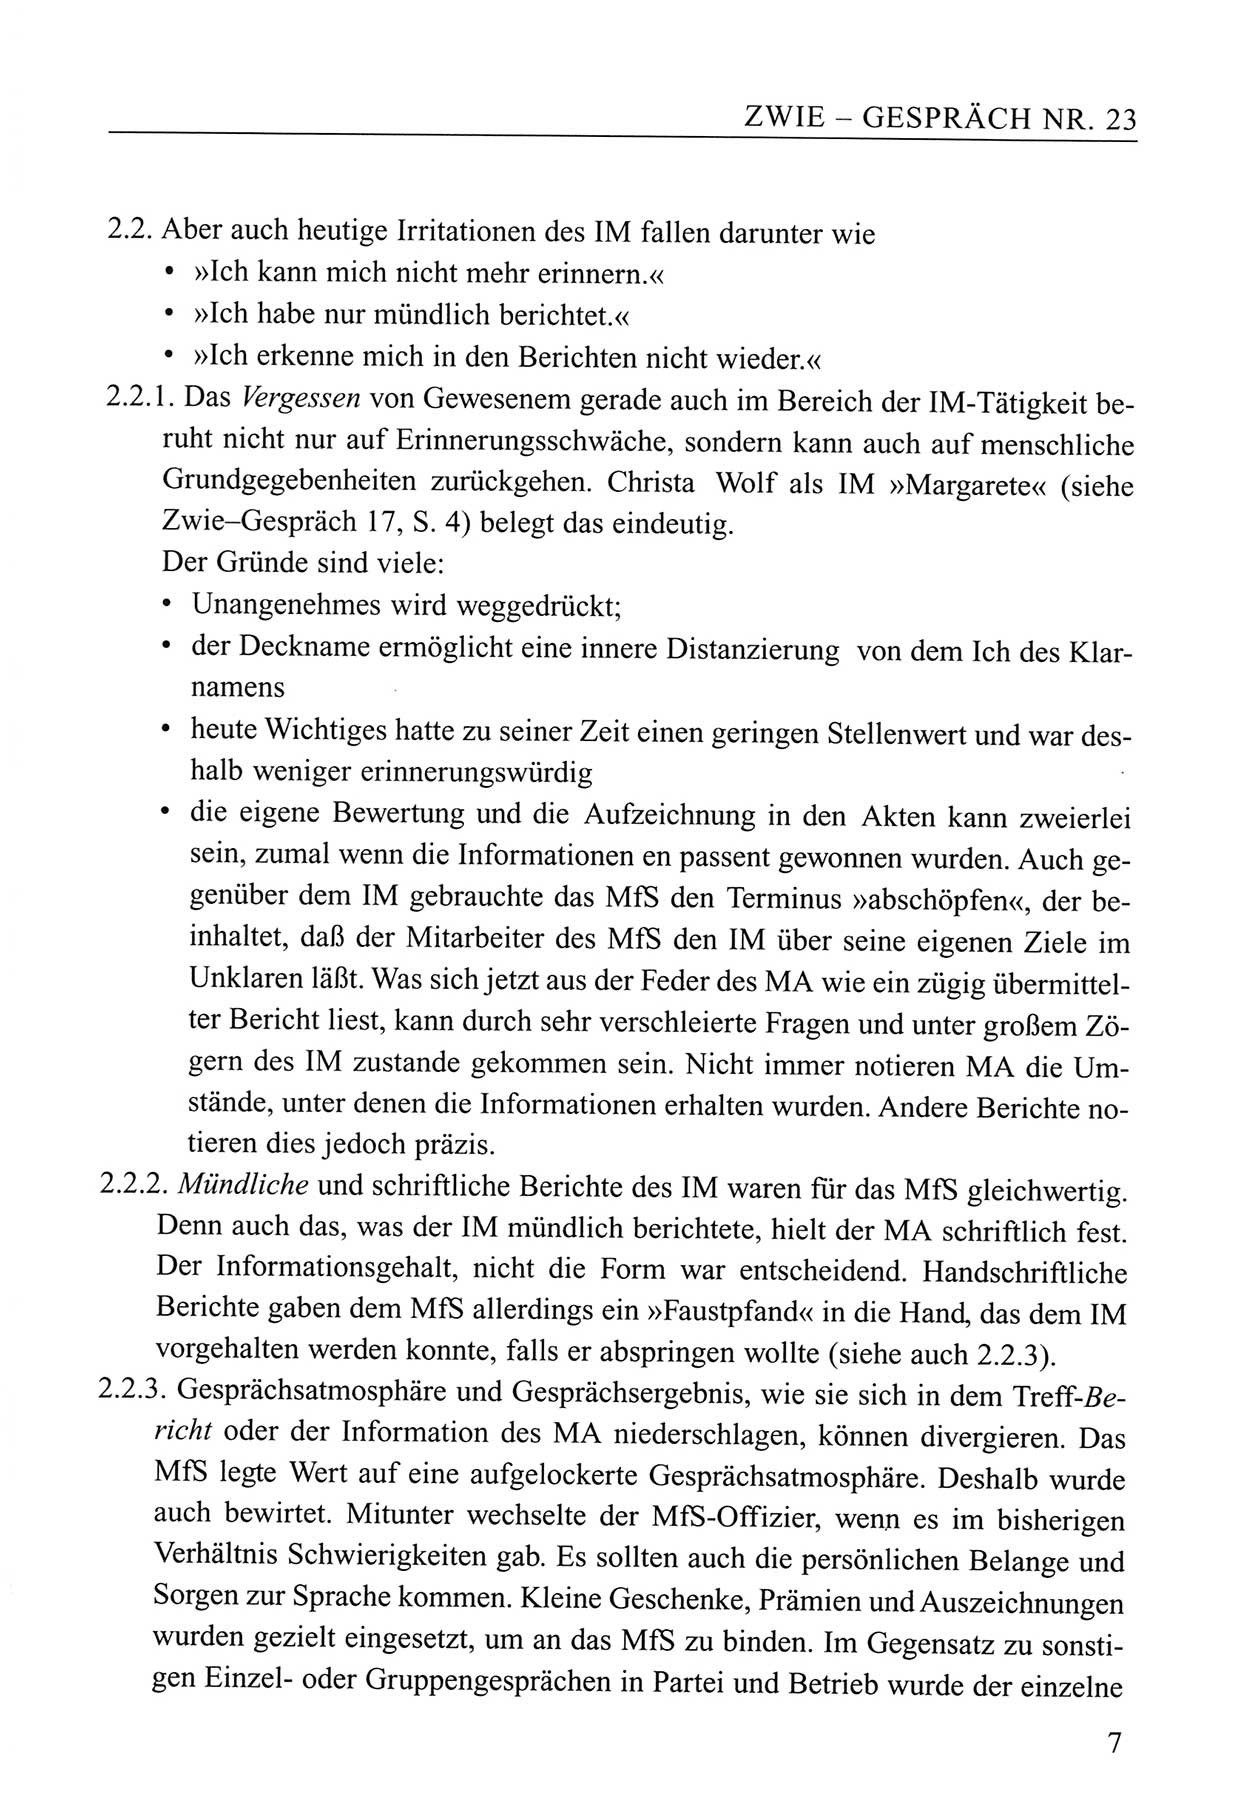 Zwie-Gespräch, Beiträge zum Umgang mit der Staatssicherheits-Vergangenheit [Deutsche Demokratische Republik (DDR)], Ausgabe Nr. 23, Berlin 1994, Seite 7 (Zwie-Gespr. Ausg. 23 1994, S. 7)